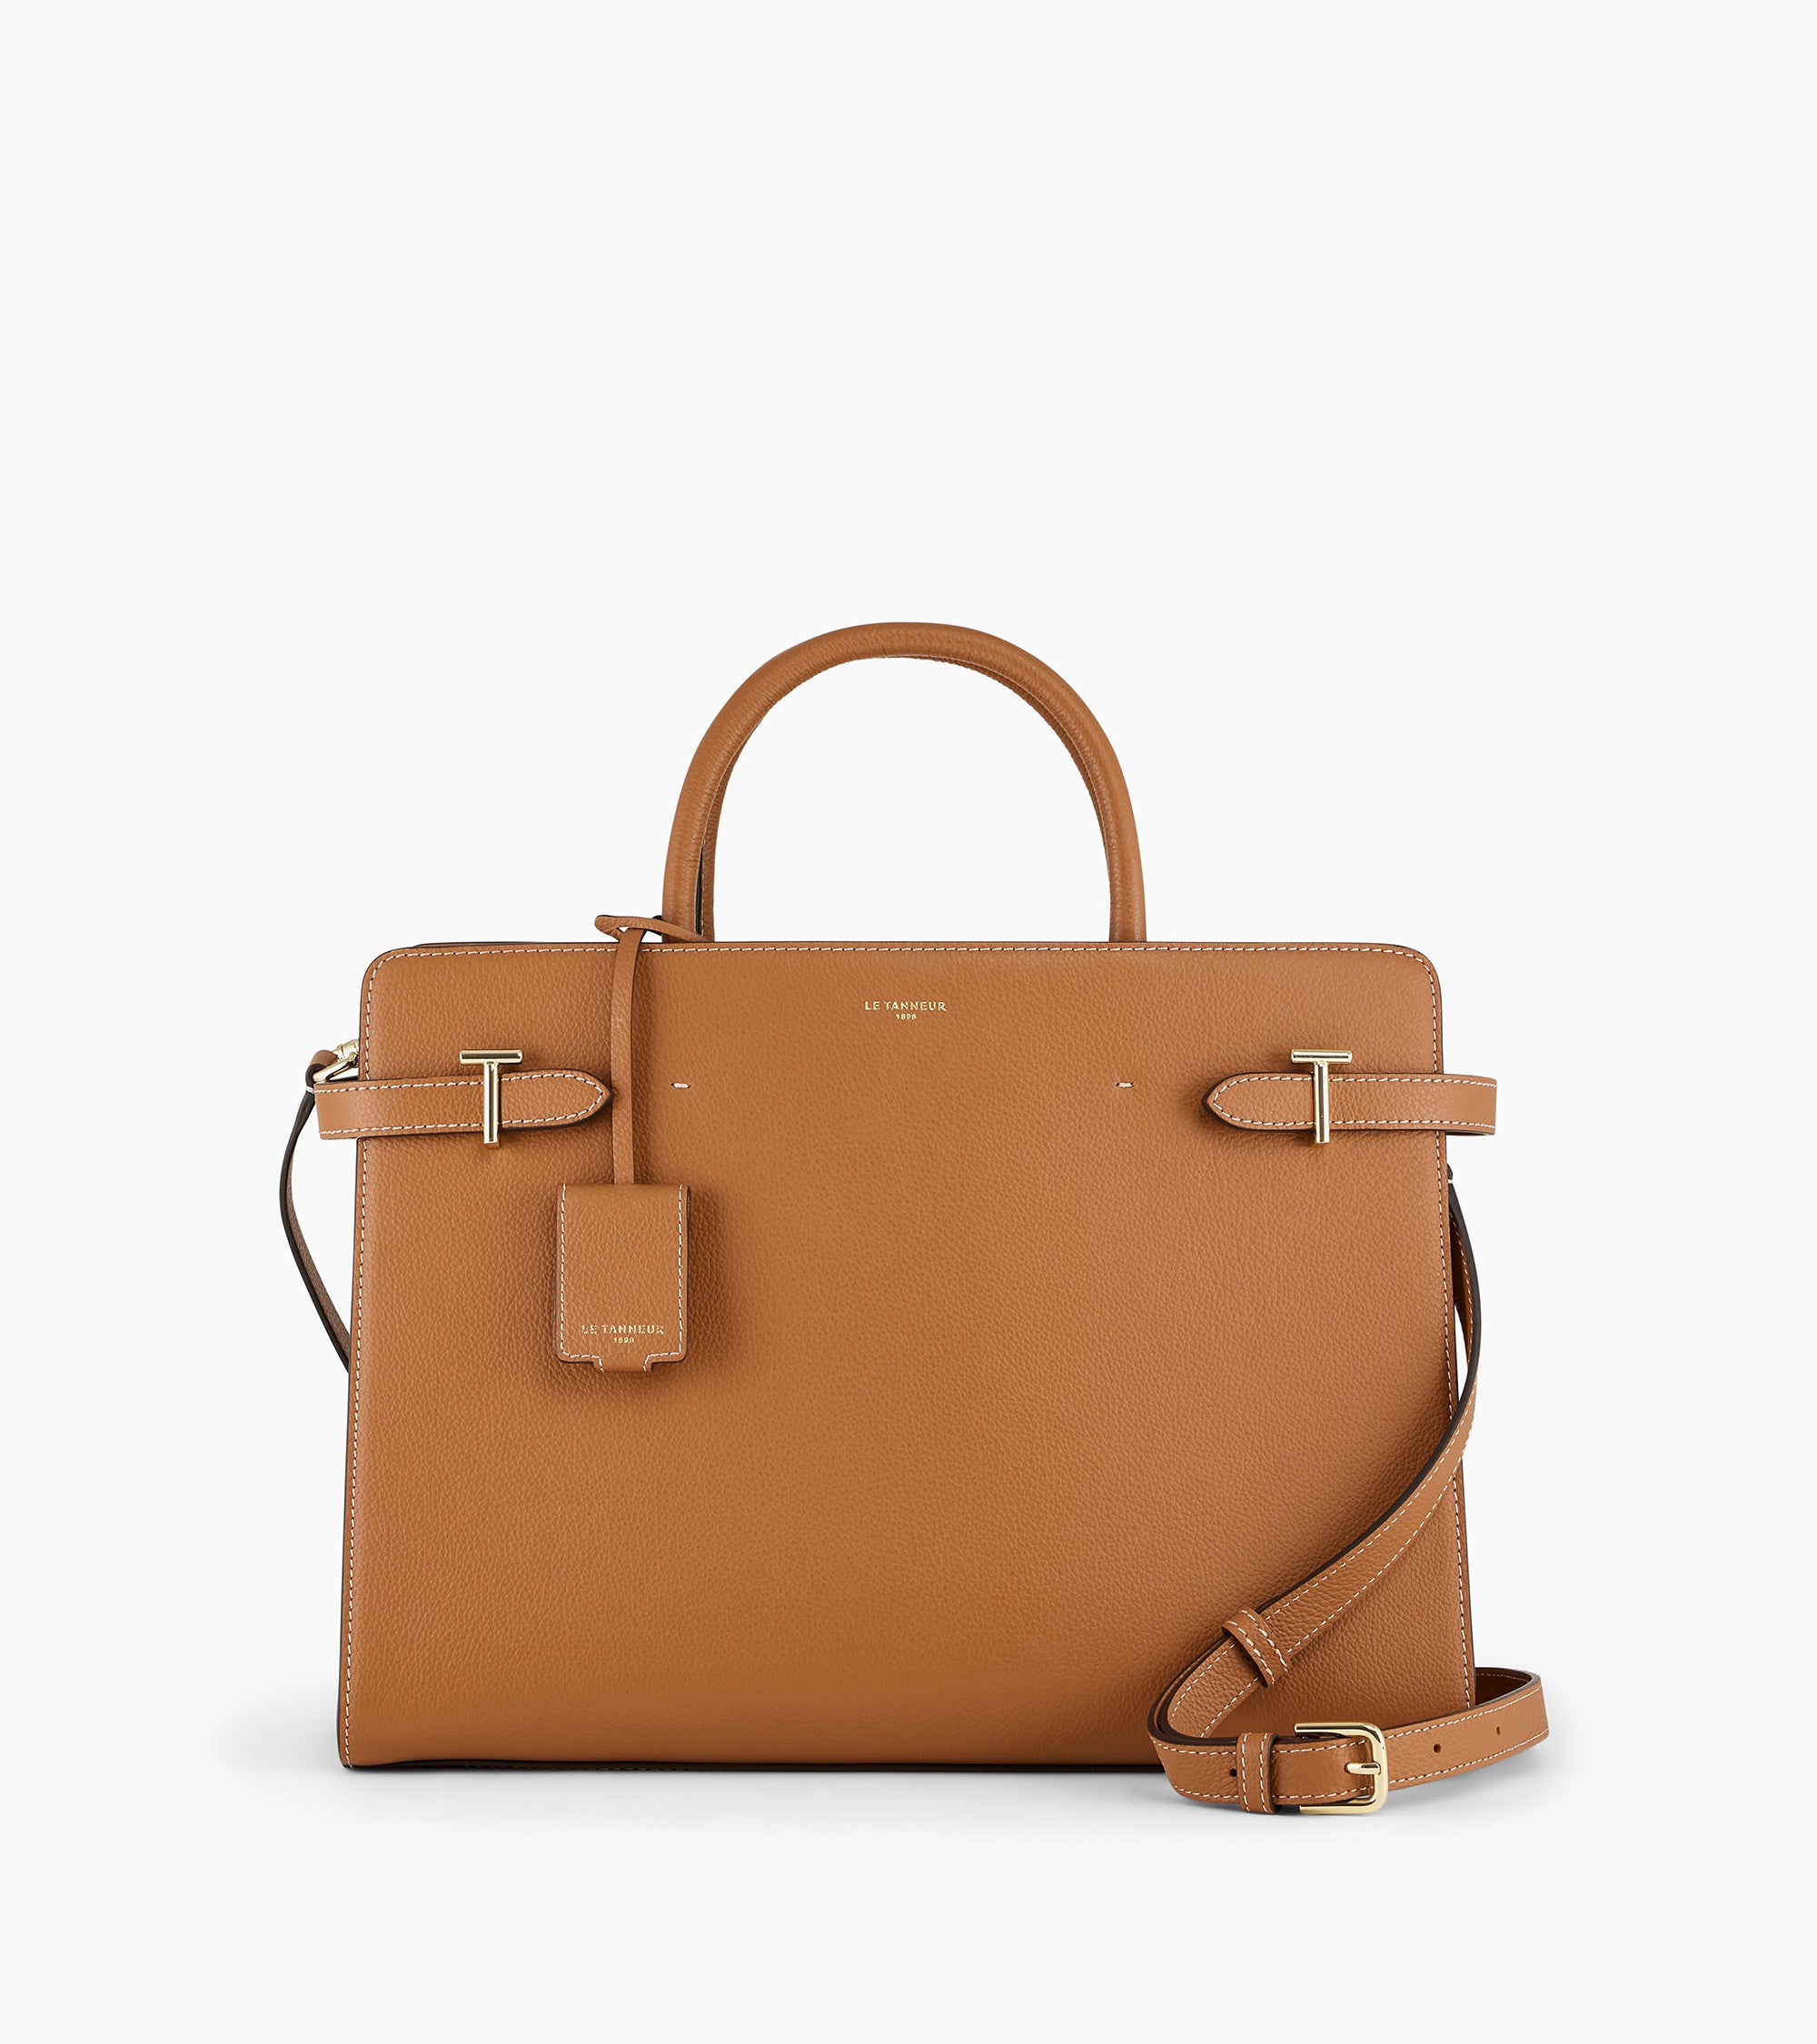 Emilie large handbag in pebbled leather